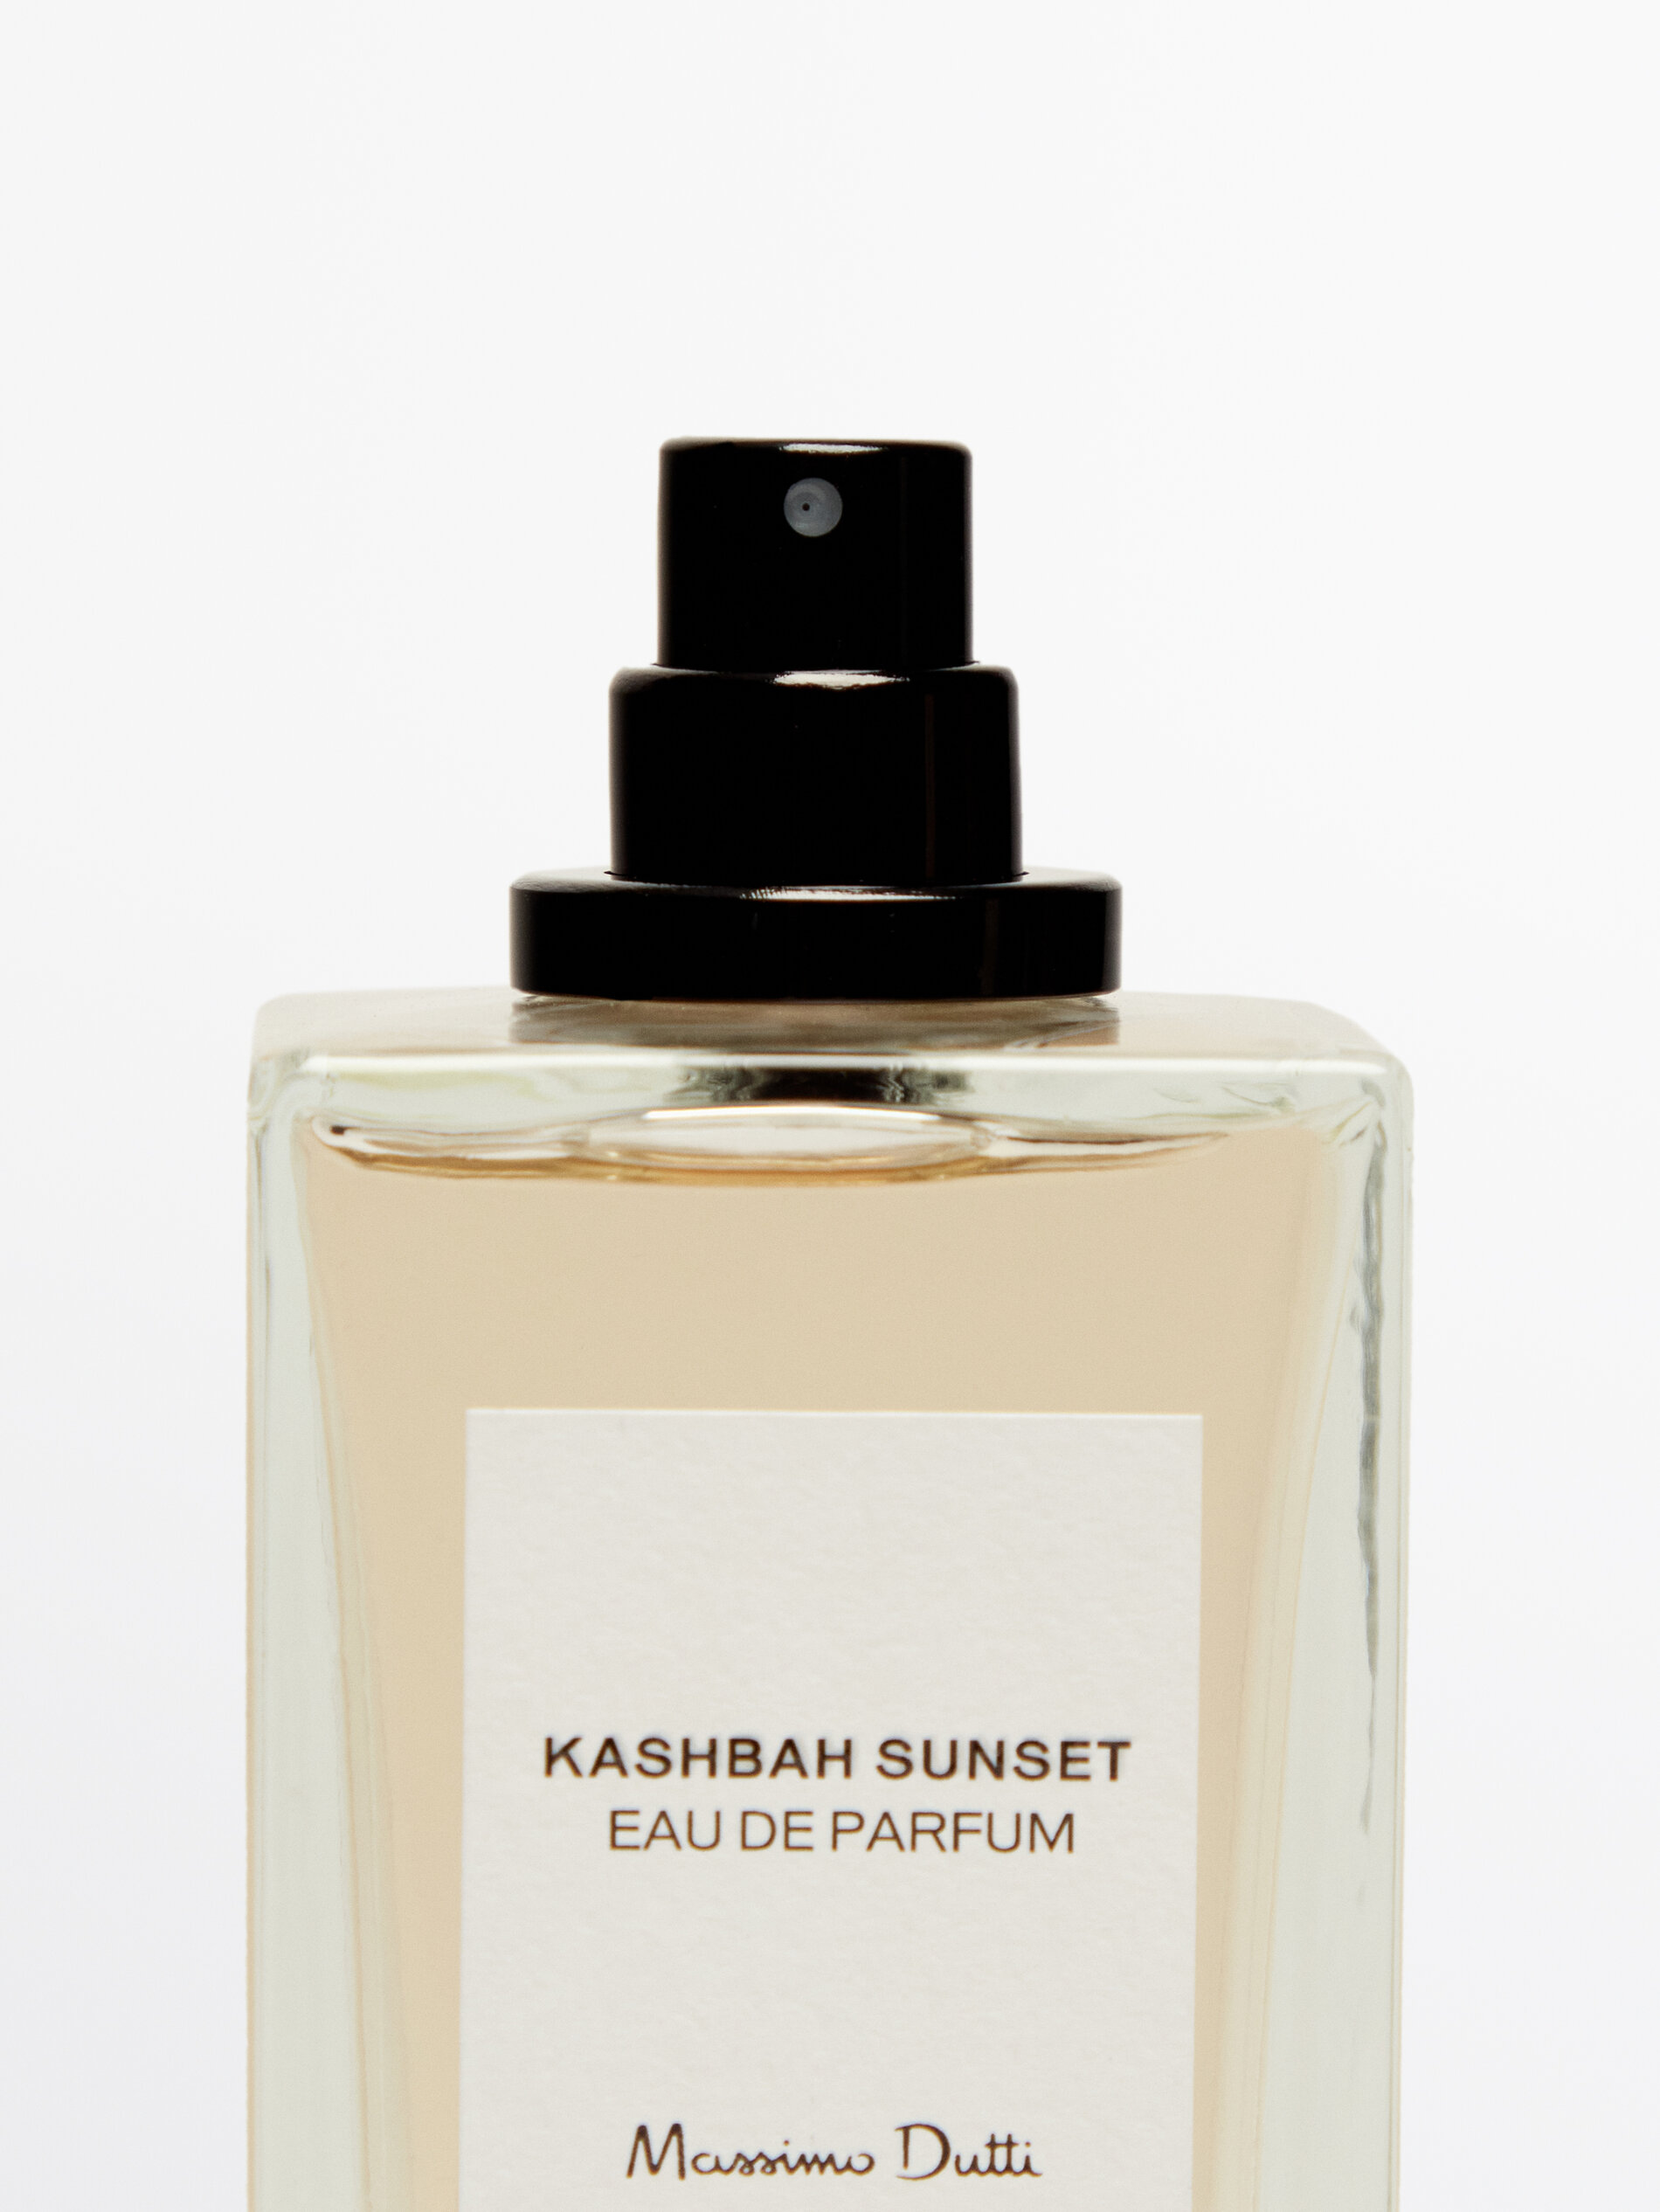 (100 ml) Kashbah Sunset Eau de Parfum